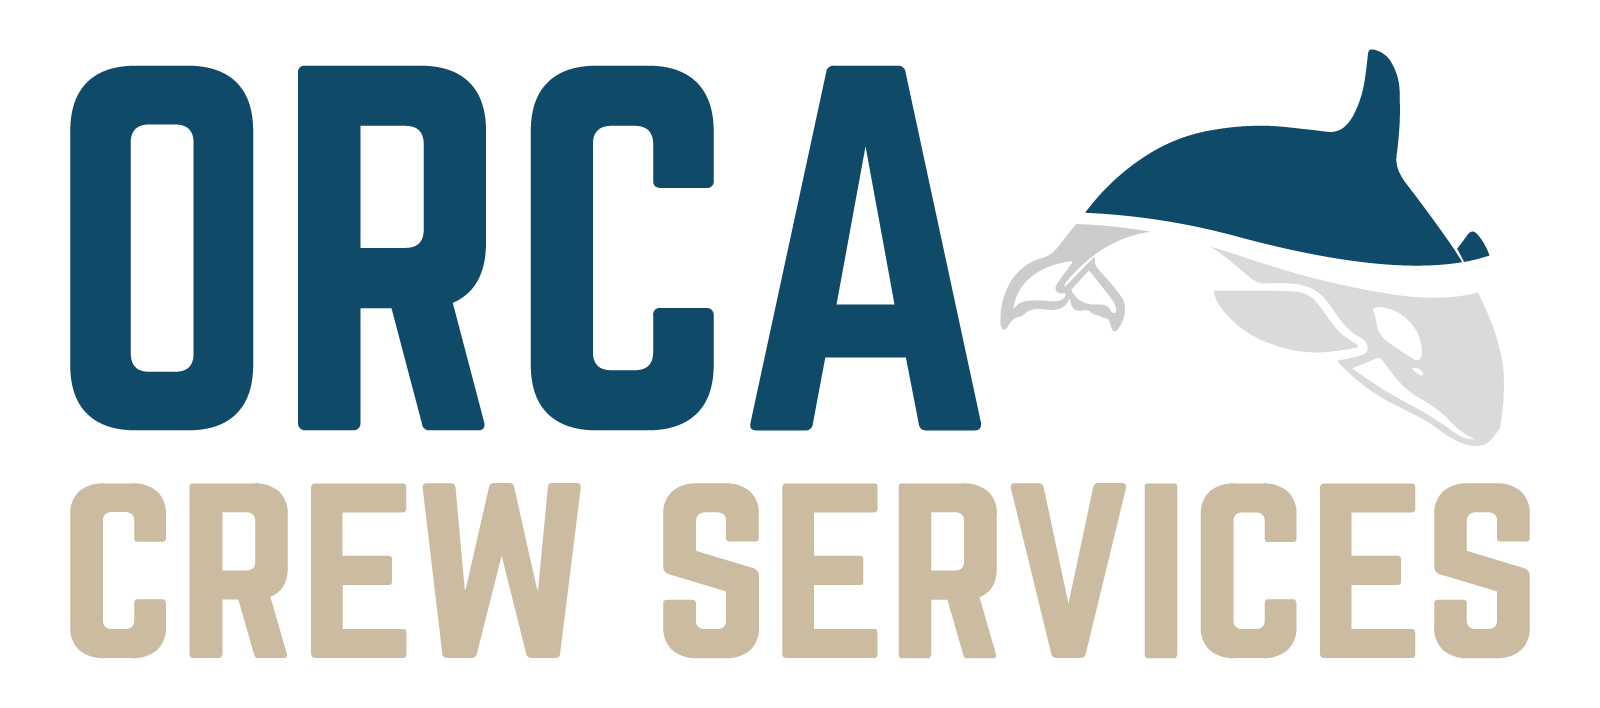 ORCA Crew Services logo